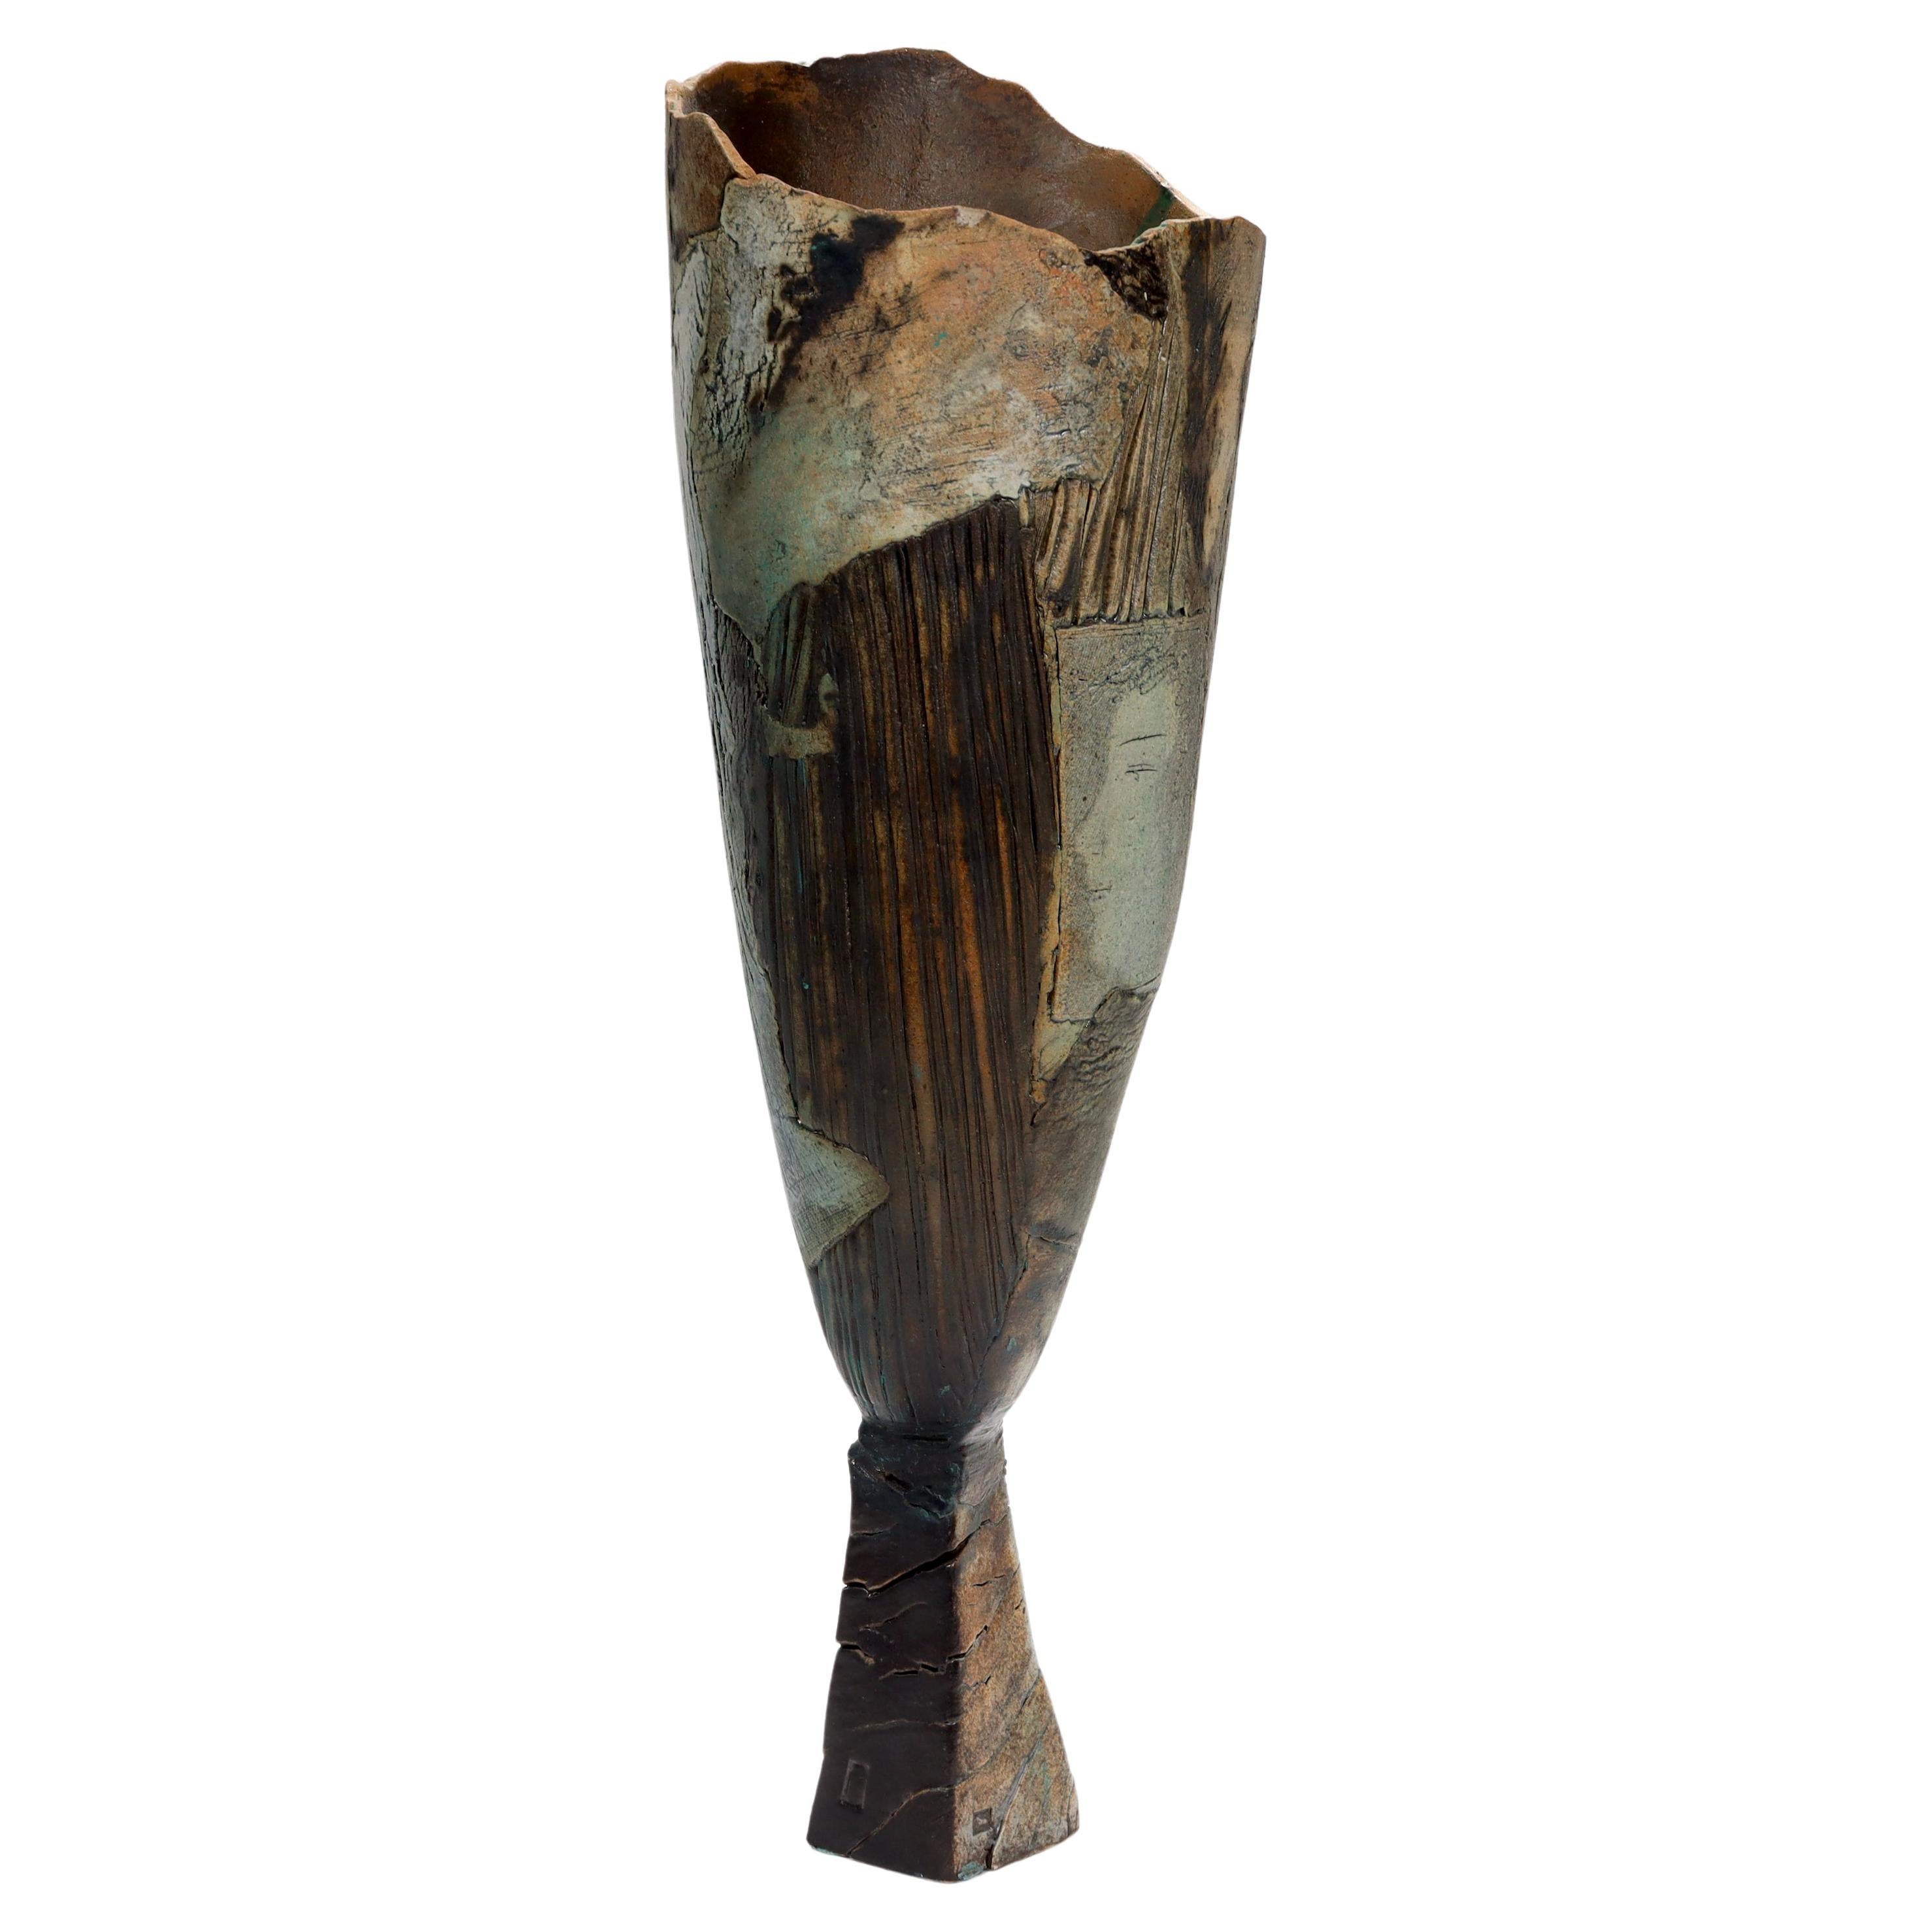 Un vase en poterie d'art de studio du 20e siècle, signé, d'une grande finesse.

Par Rafael Saifulin.

Avec un plateau en forme de tulipe allongée et asymétrique, soutenu par une base trapézoïdale.

Ayant une surface en patchwork et une section avec